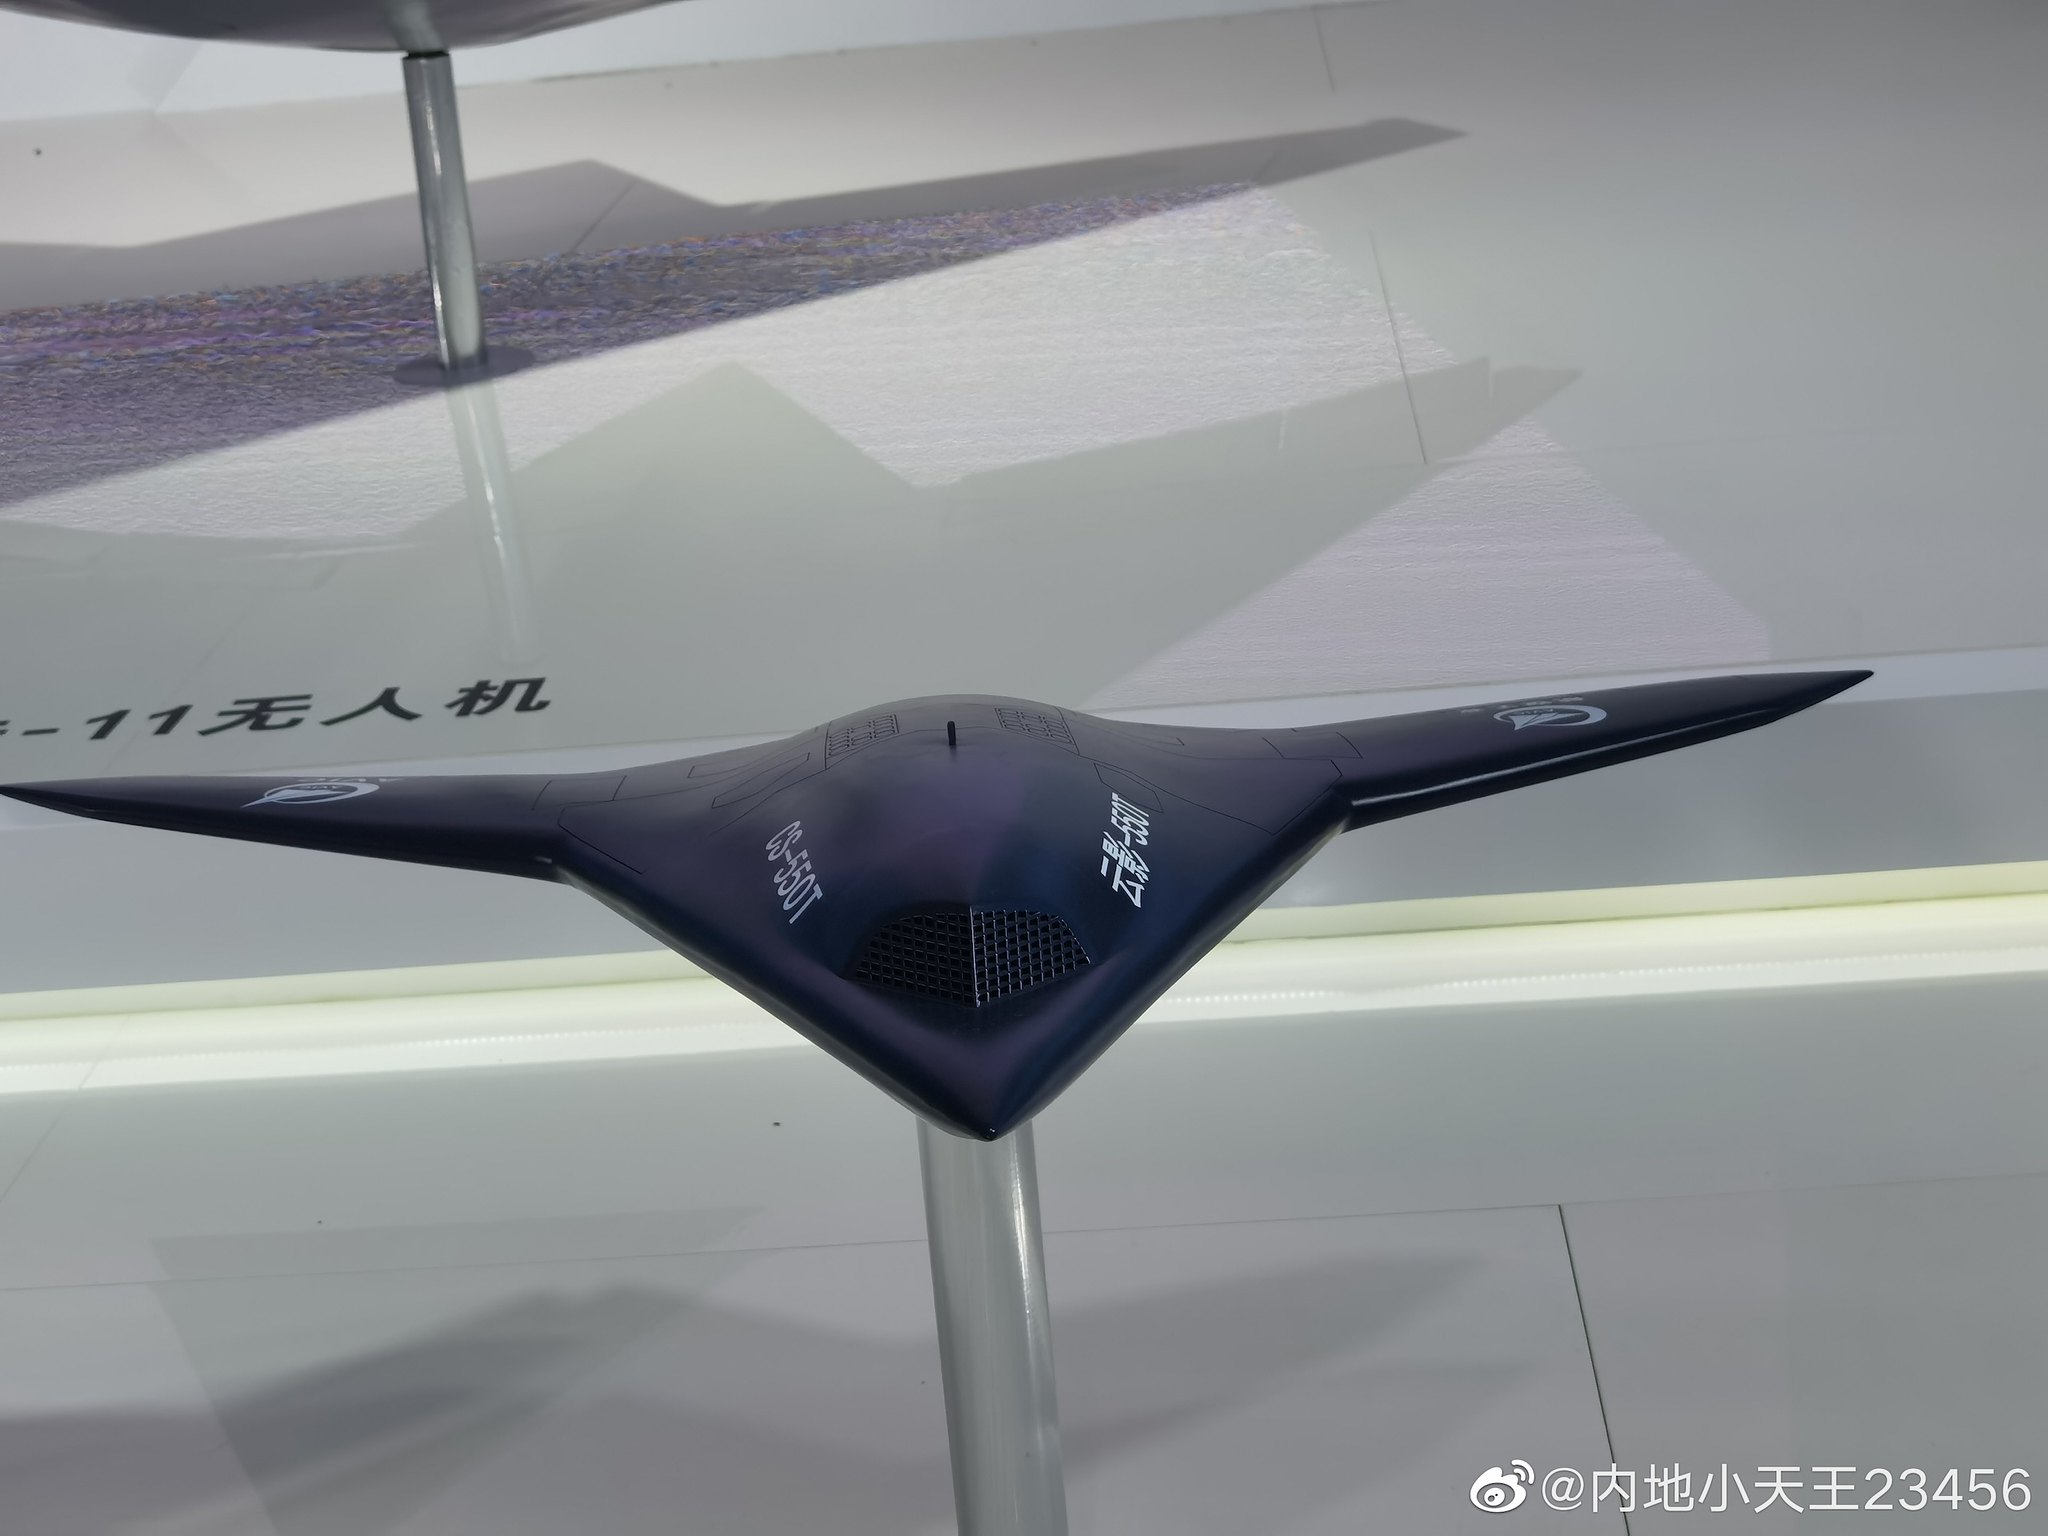 Un misterioso dron furtivo similar al Northrop Grumman X-47B ha sido visto en China - hay tres versiones de lo que podría ser-7